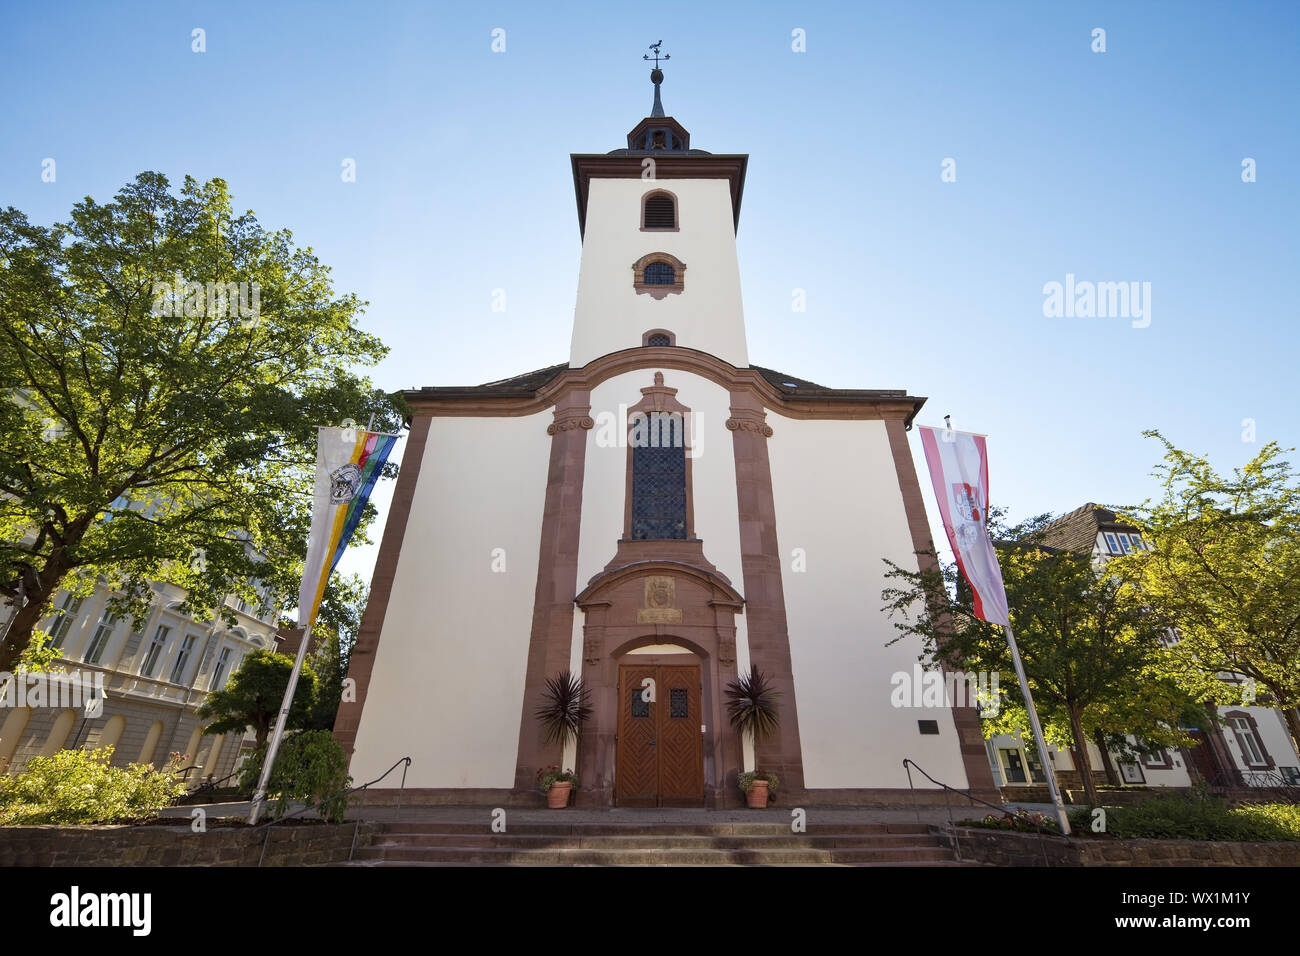 L'église Saint Nikolai, vieille ville, Hoexter, Weserbergland, Nordrhein-Westfalen, Germany, Europe Banque D'Images